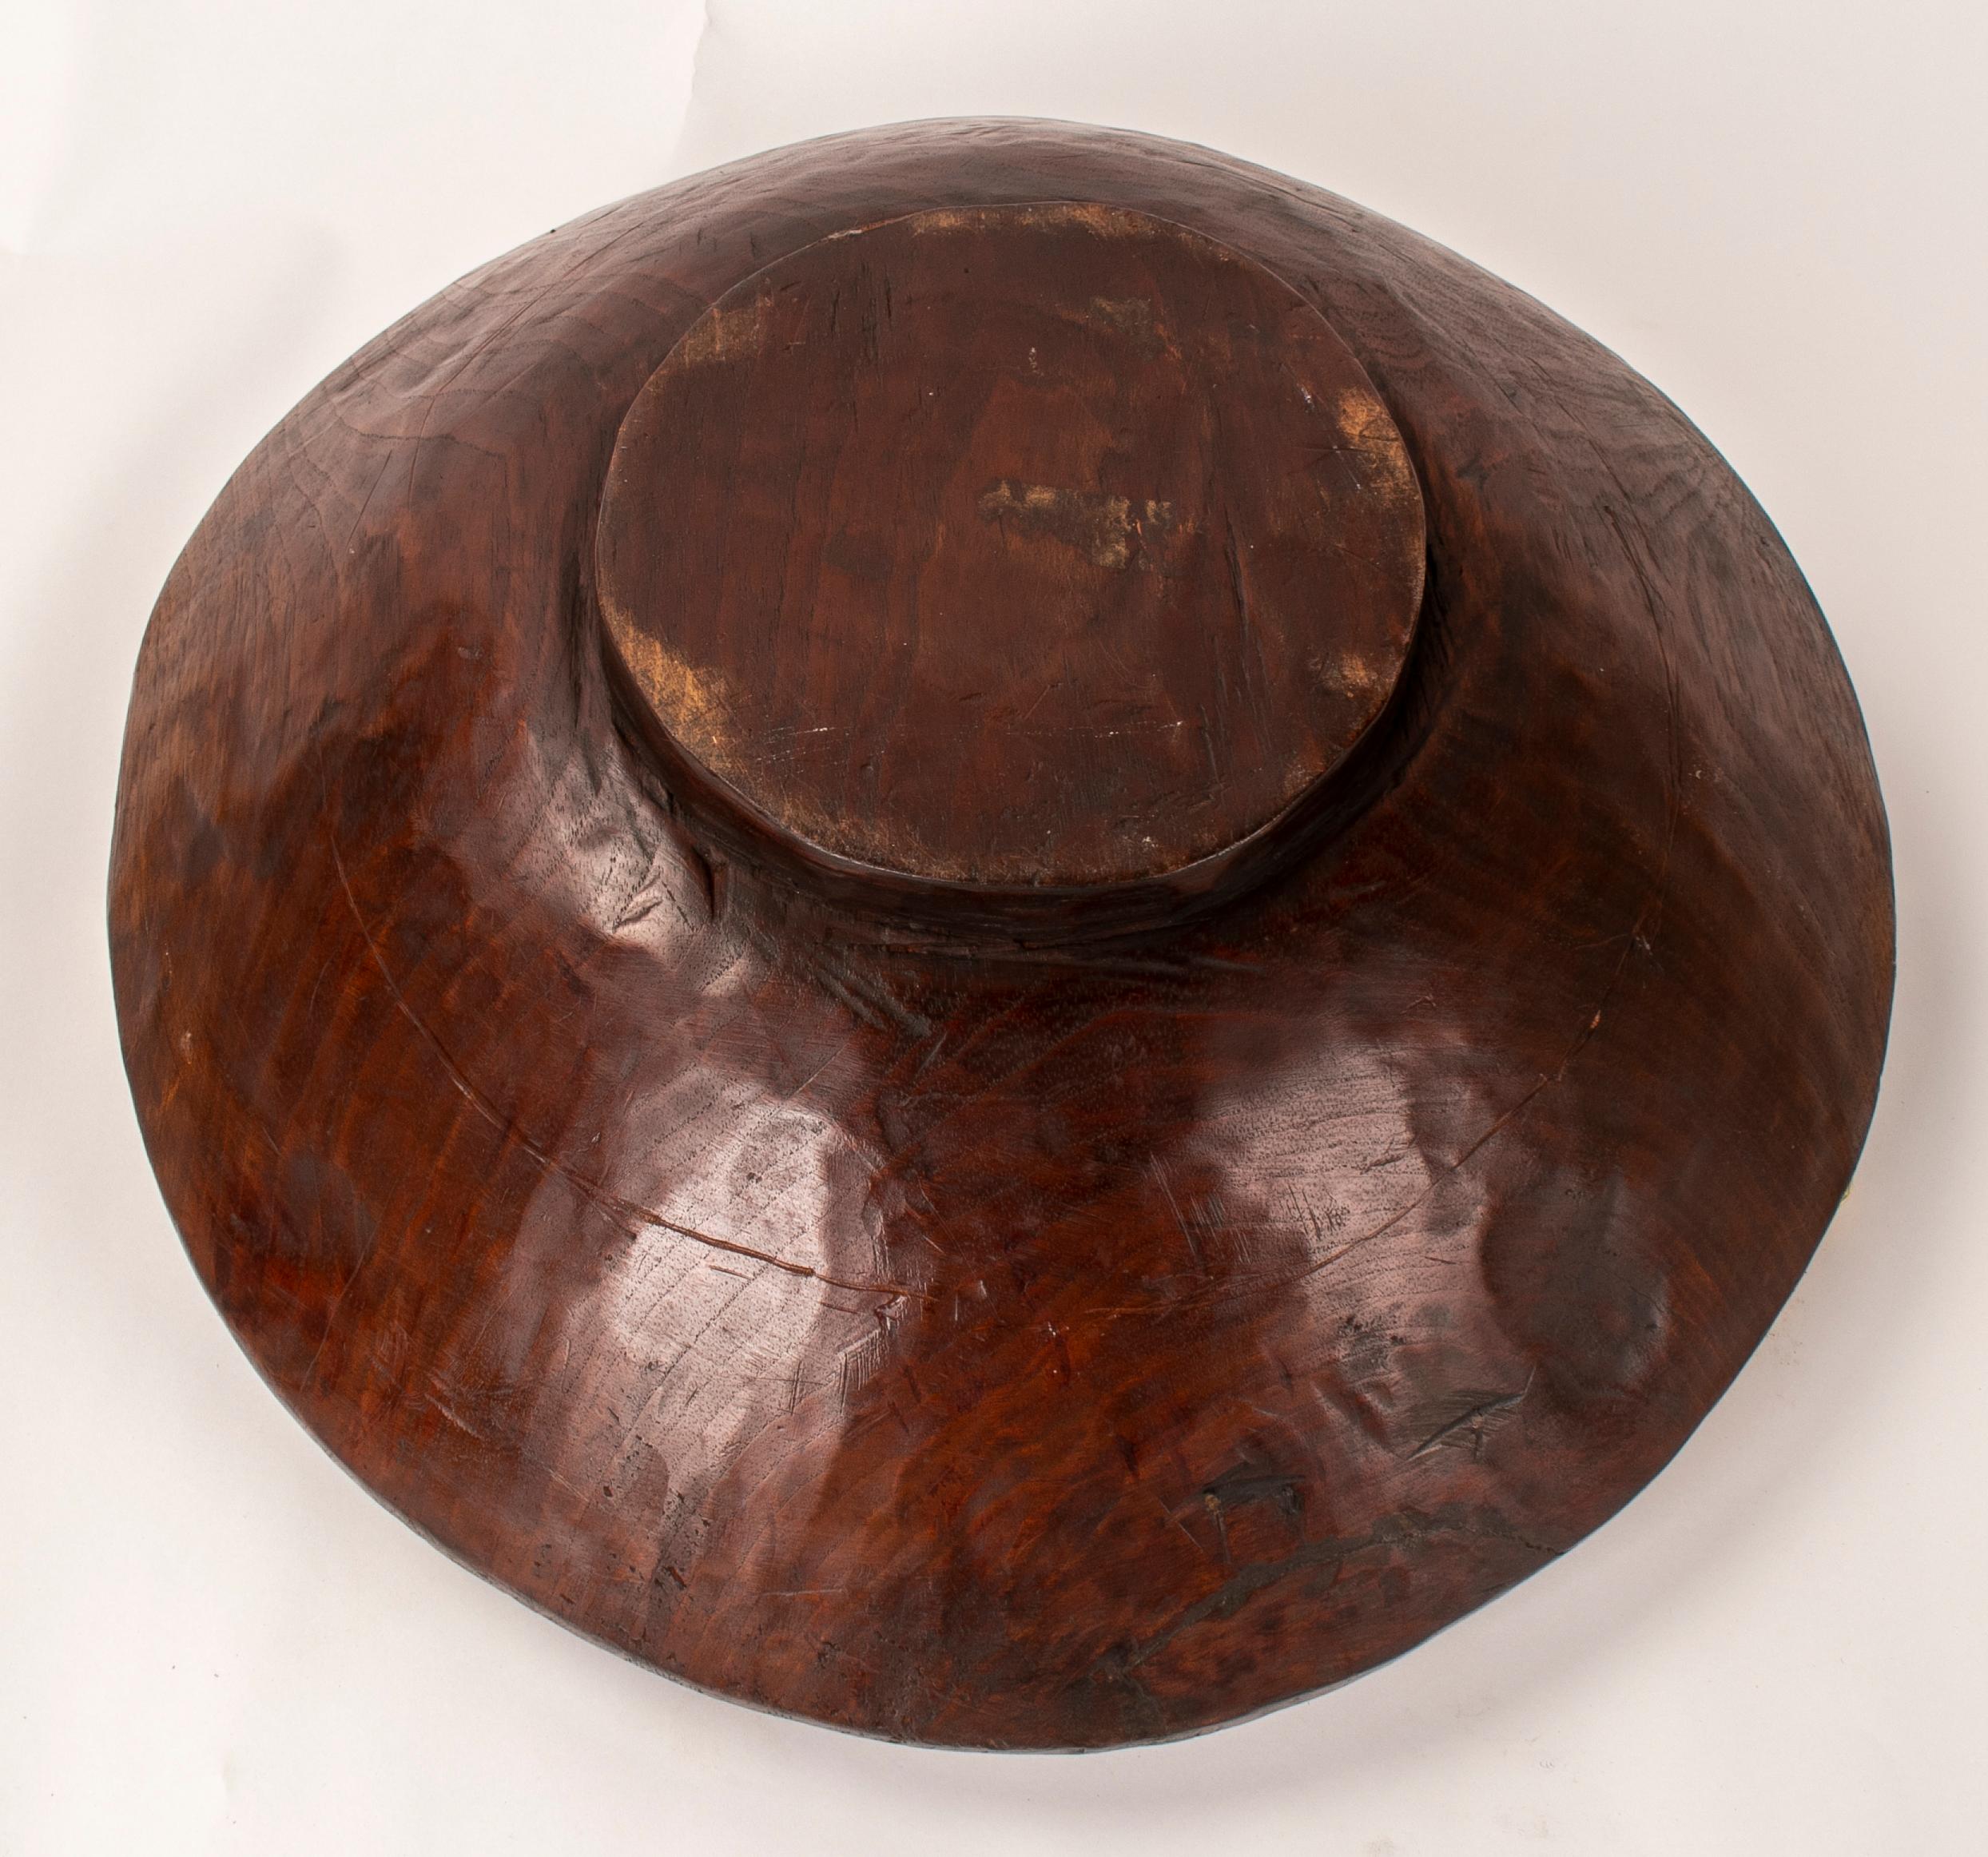 Frutero del artista David Marshall de bronce y madera, años 1980, firmado 11